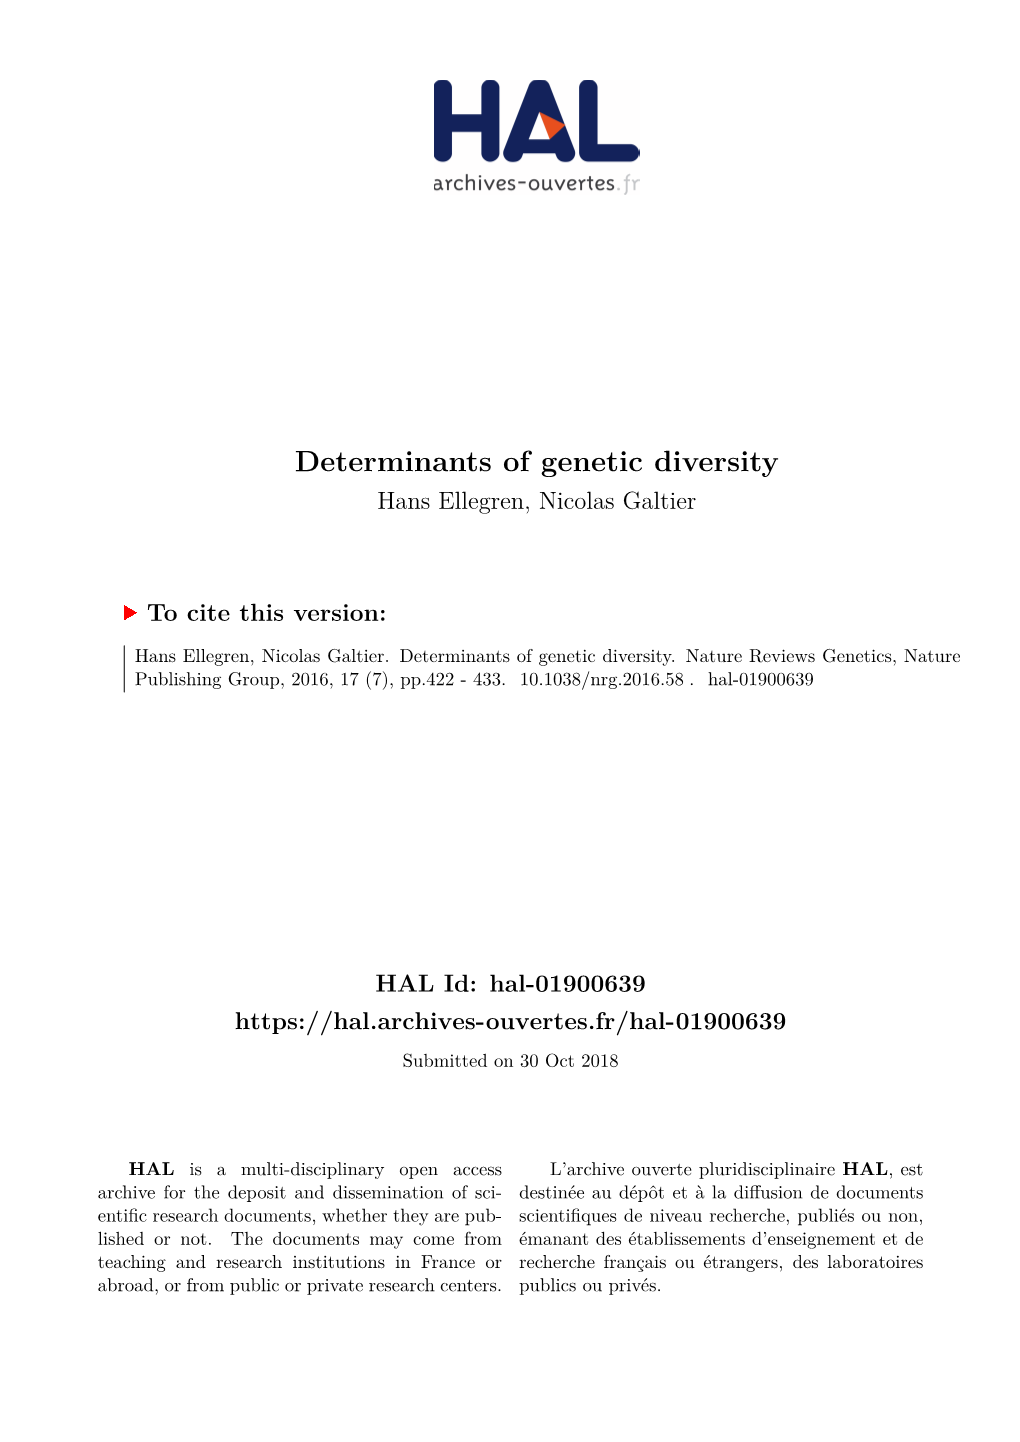 Determinants of Genetic Diversity Hans Ellegren, Nicolas Galtier